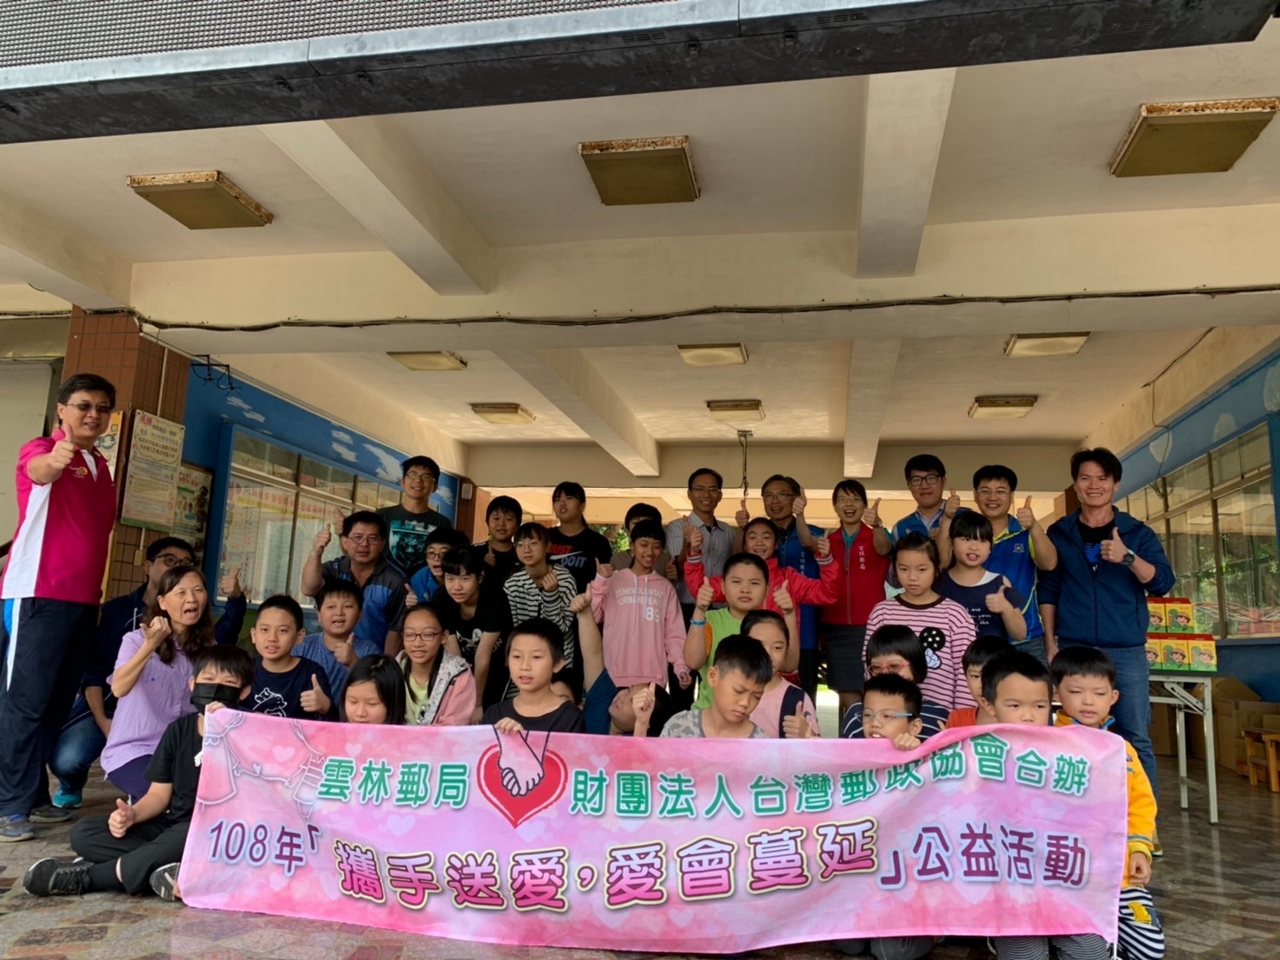 財團法人台灣郵政協會暨雲林郵局舉辦「攜手送愛、愛會蔓延」公益活動 